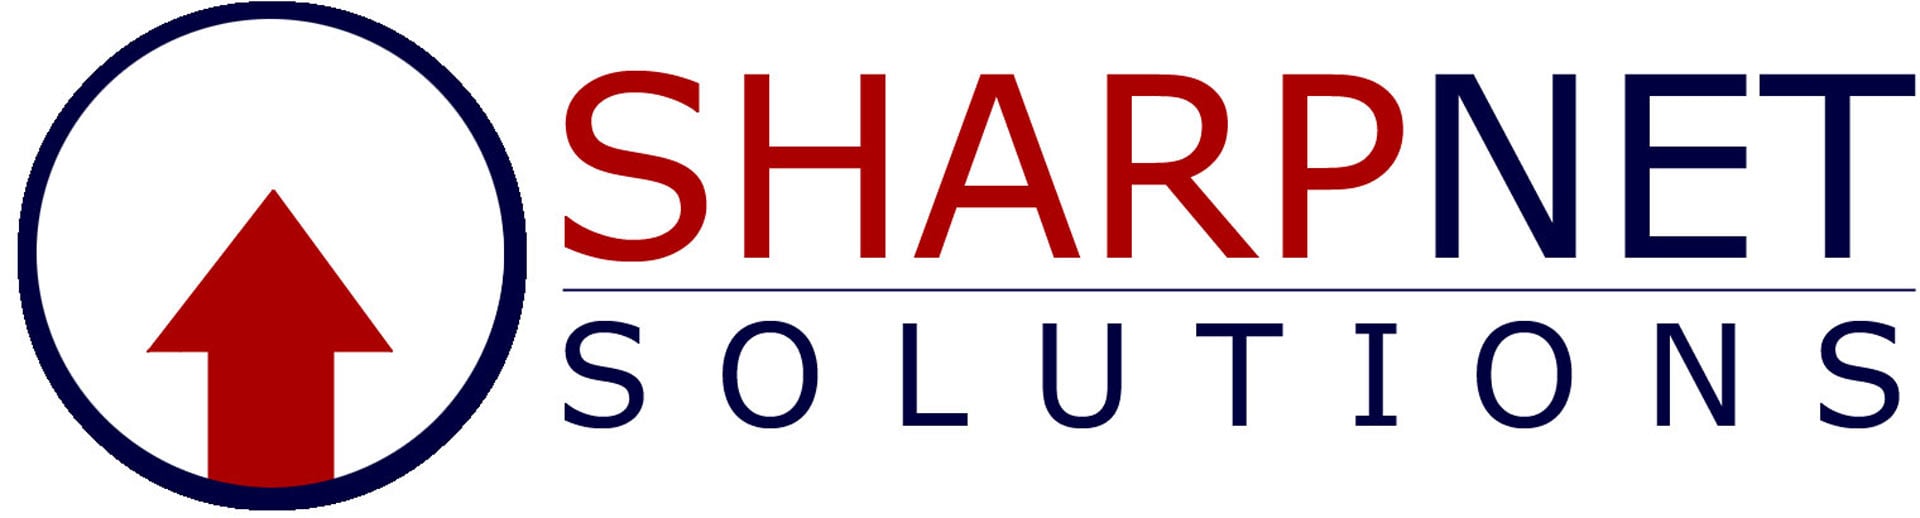 Best SMM Business Logo: SharpNet